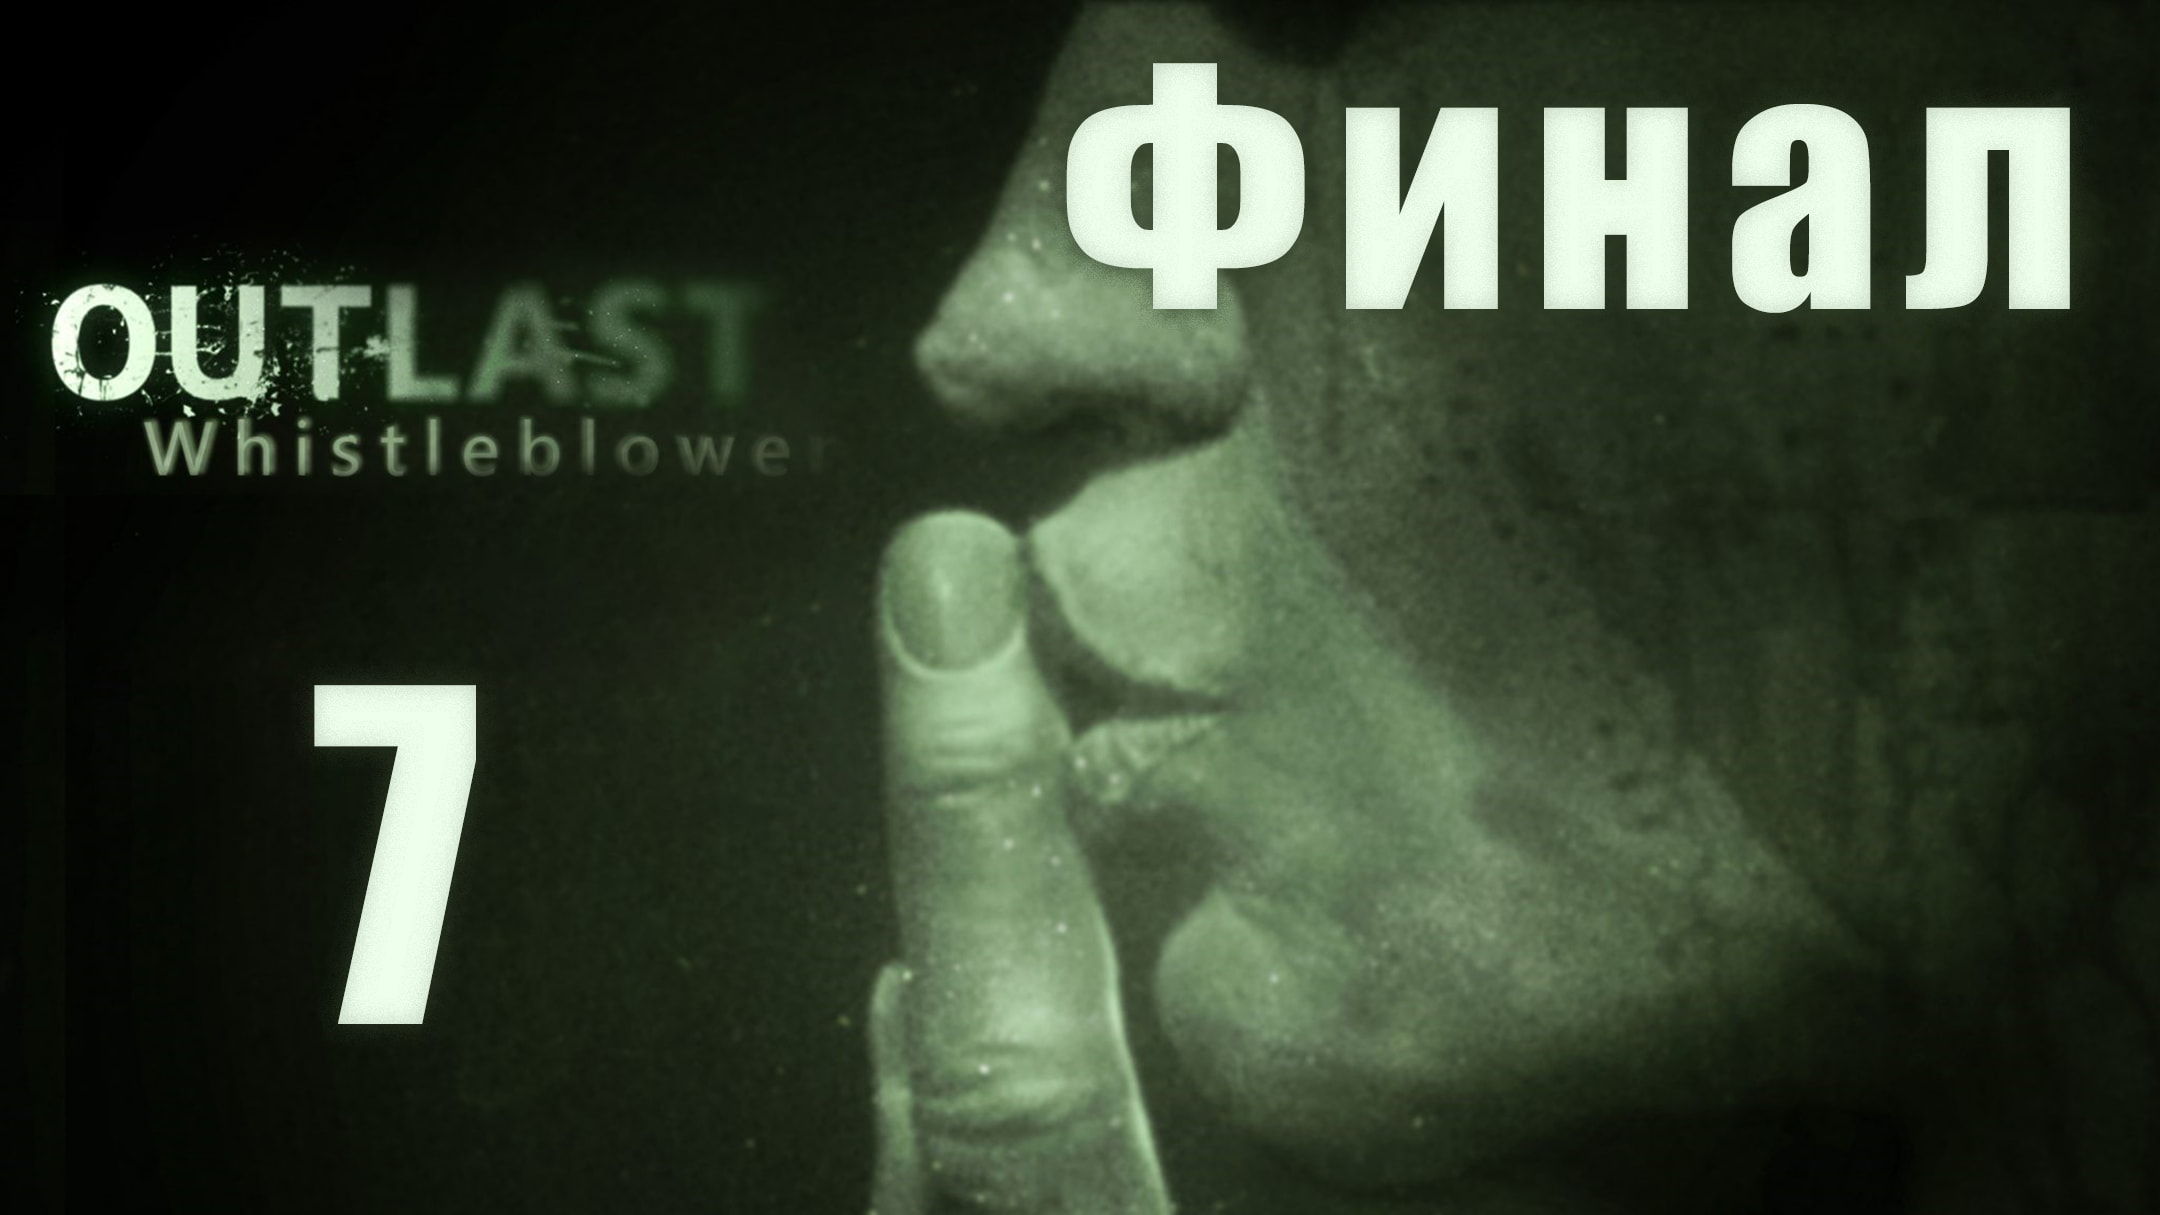 скачать outlast на андроид на русском языке бесплатно скачать фото 98